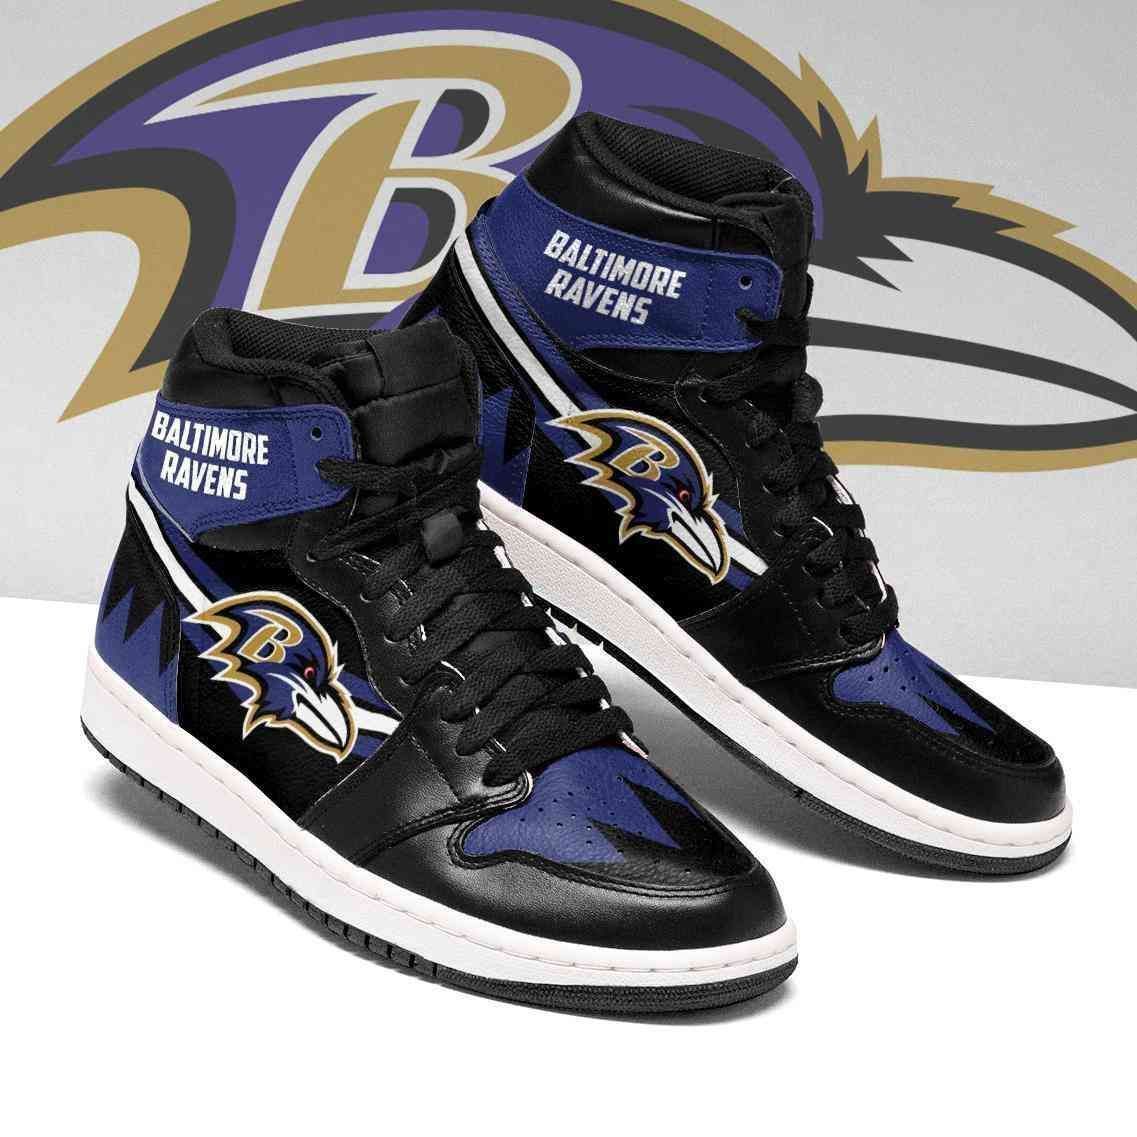 Baltimore Ravens Nfl Football Air Jordan Shoes Sport Sneakers